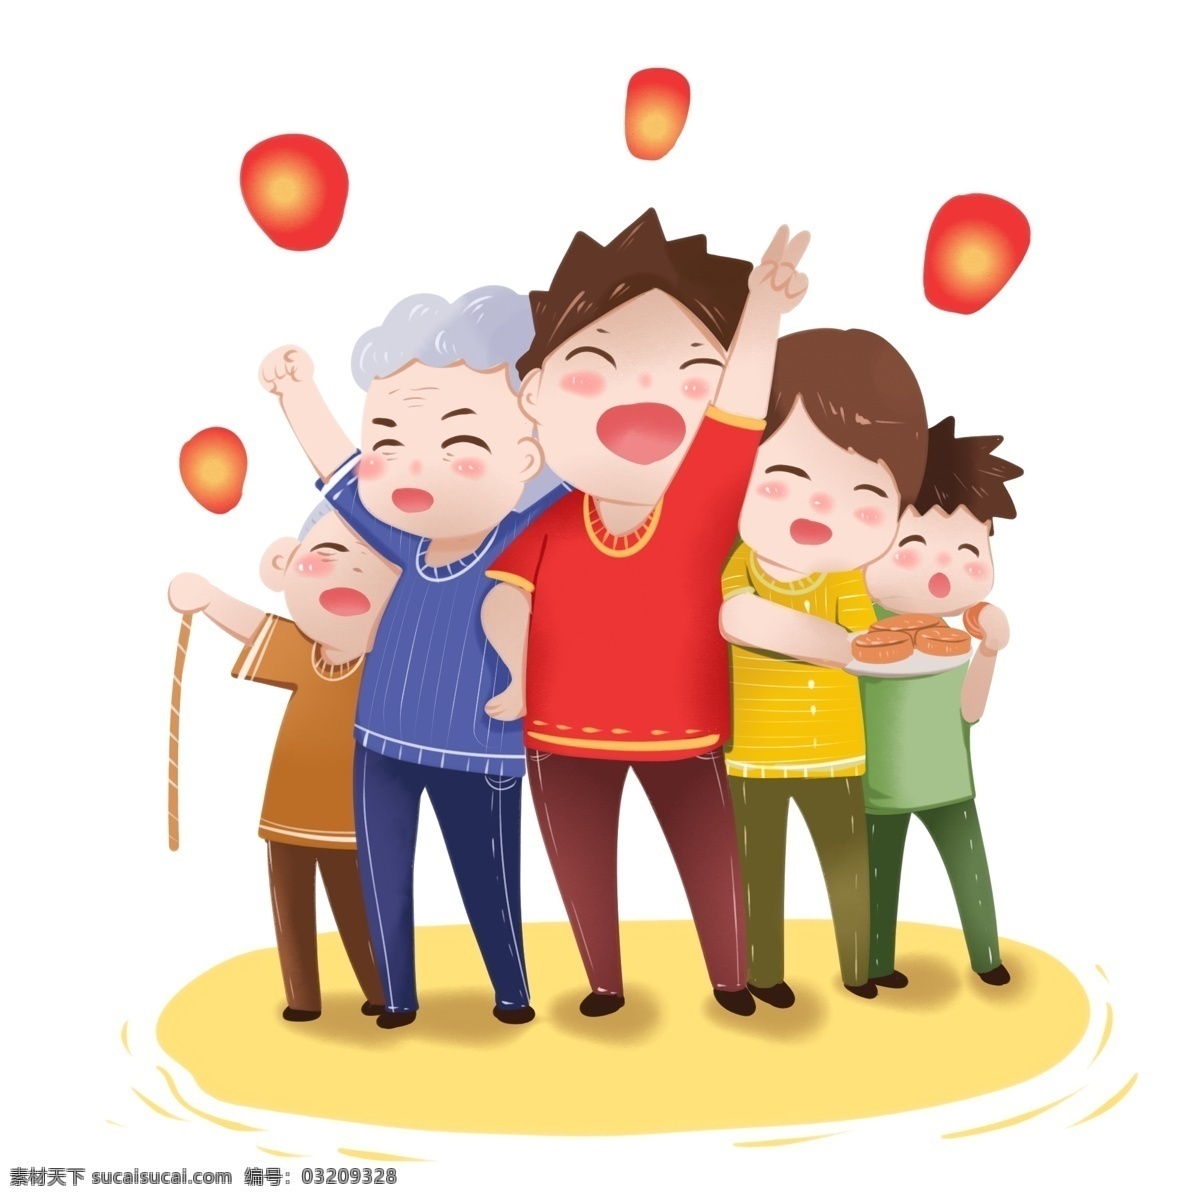 中秋节 大团圆 合家 欢乐 八月十五 许愿灯 吃月饼 全家福